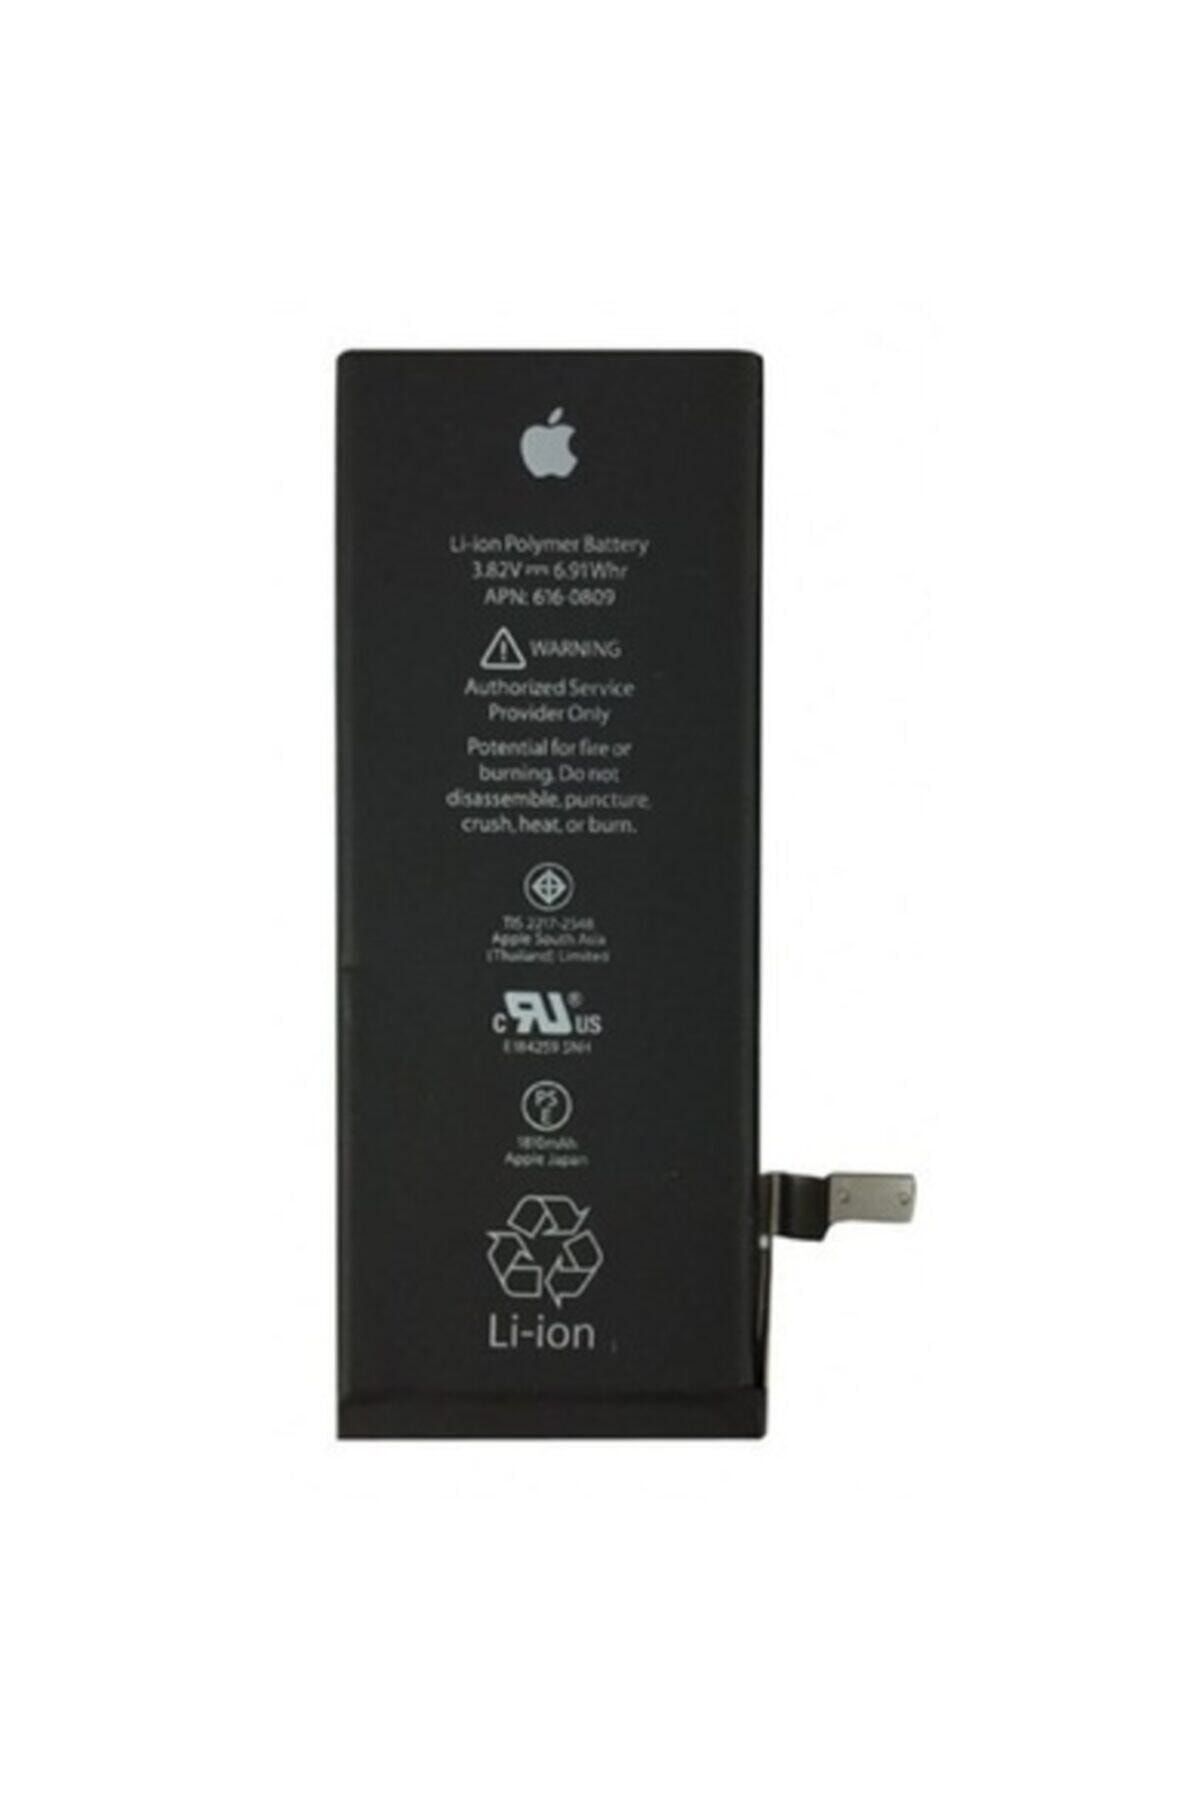 MT STORE Apple Iphone 8 Batarya Pil 1821 Mah